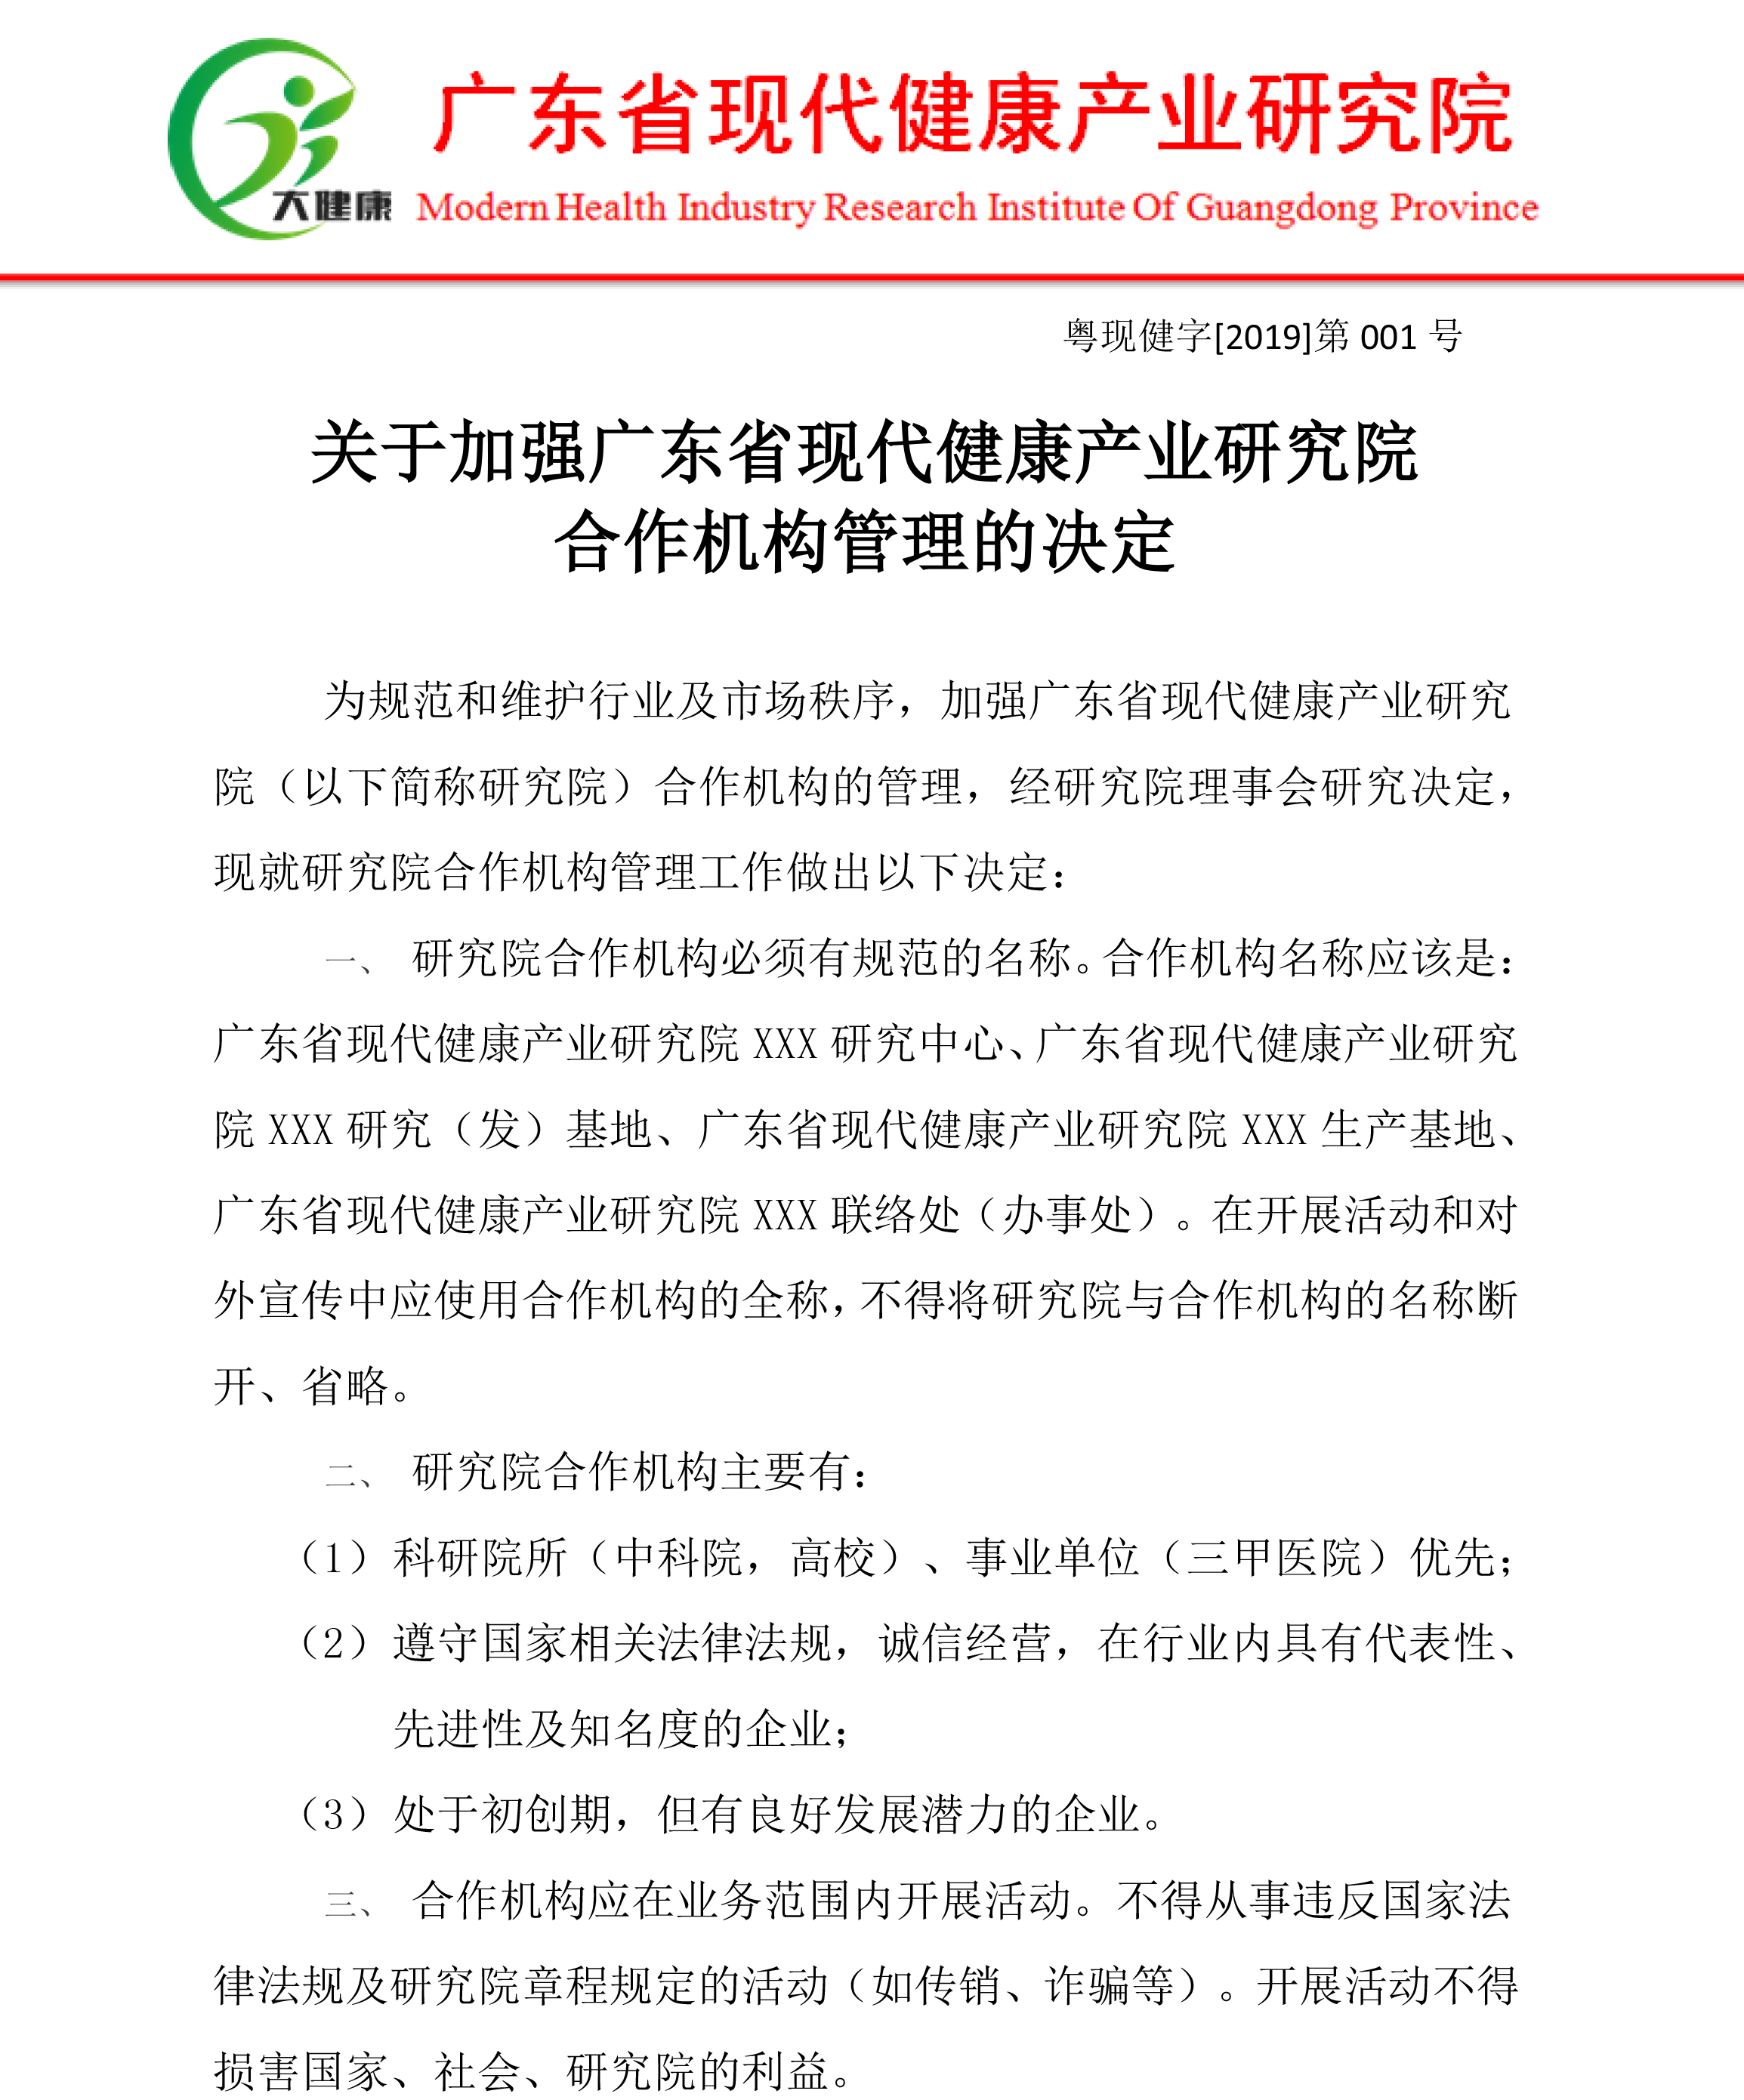 关于加强广东省现代健康产业研究院合作机构管理的决定